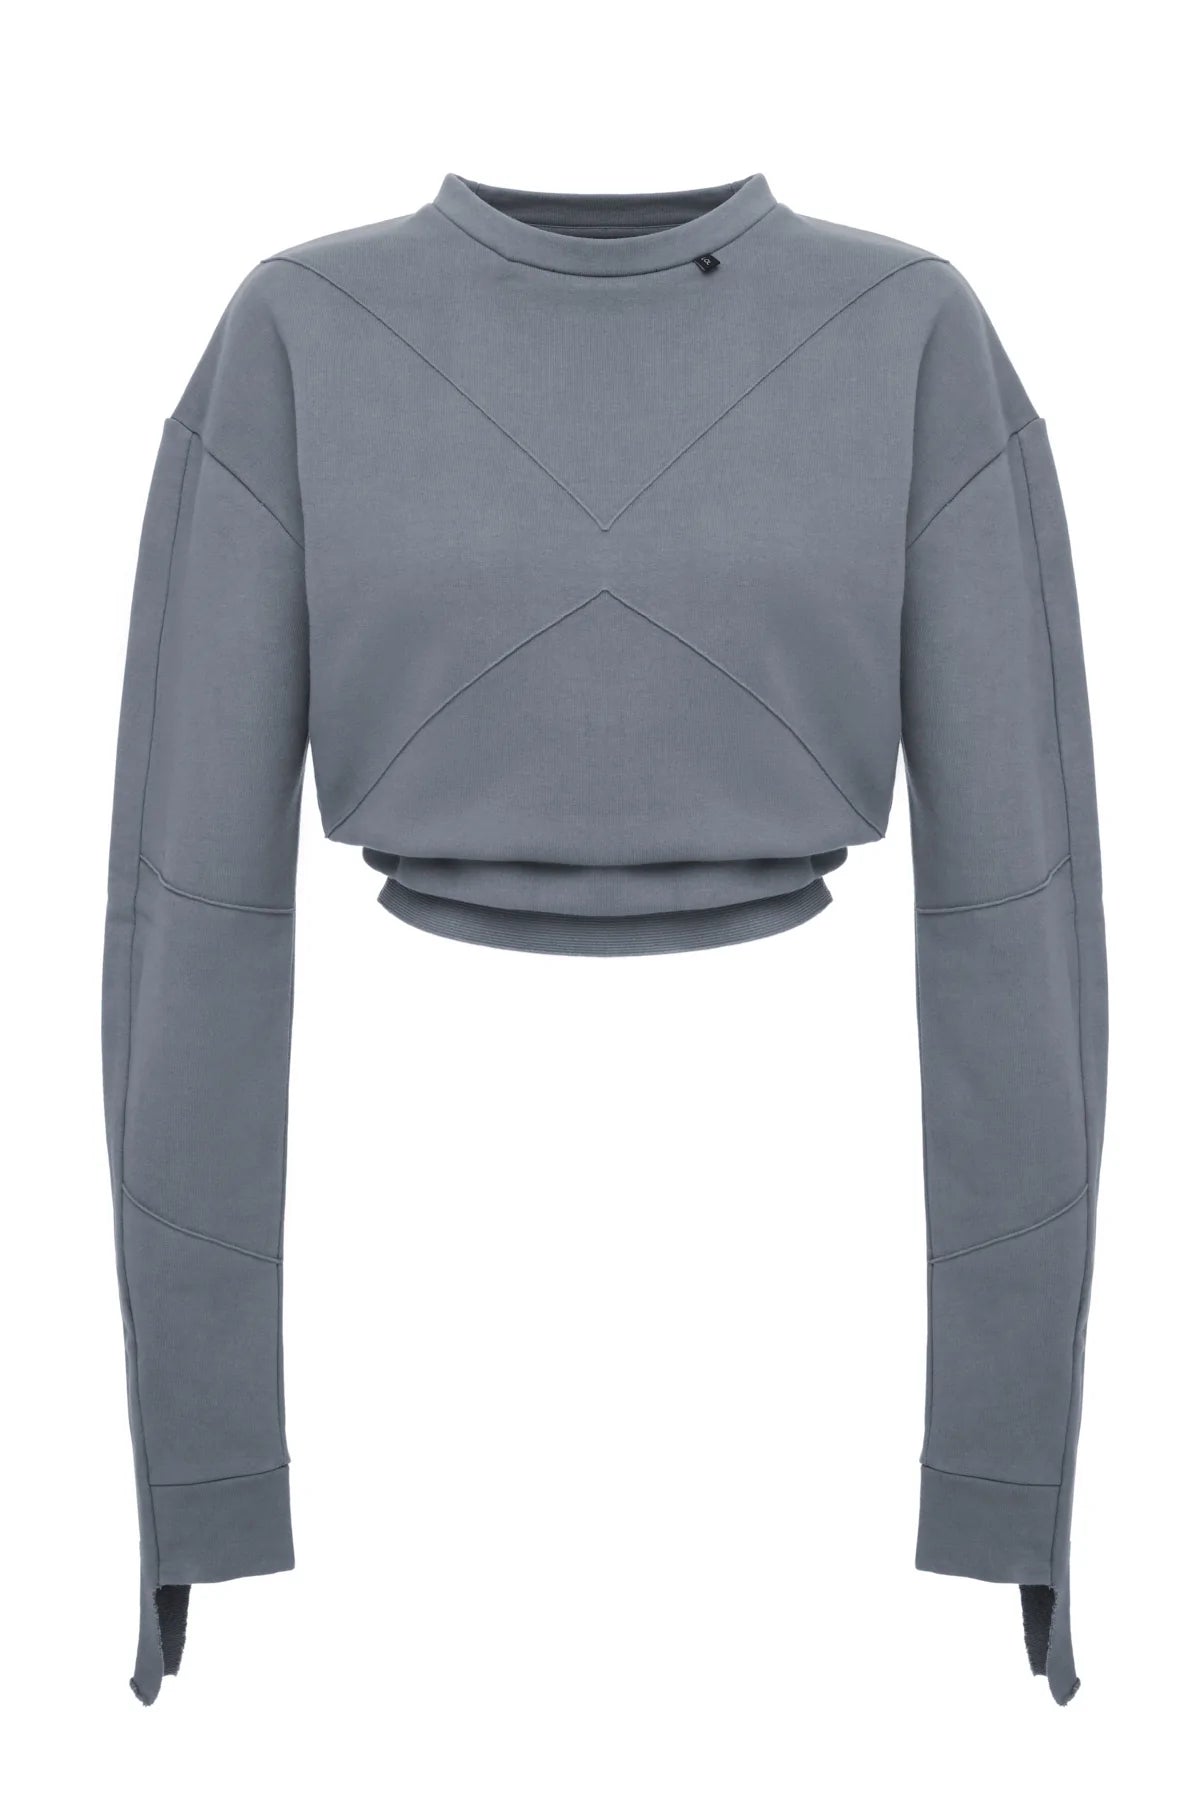 Astro - Grey Sweatshirt